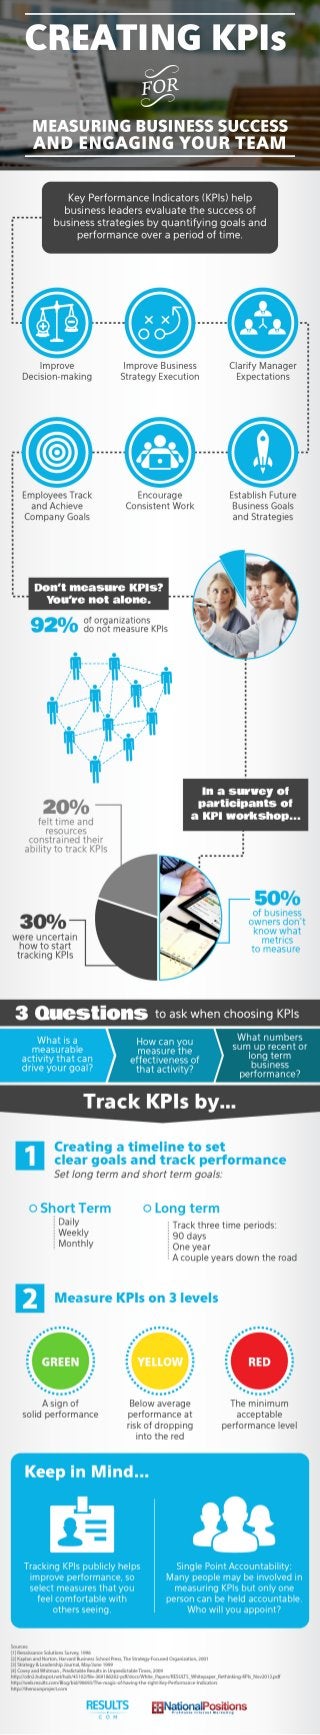 RESULTS.com KPI infographic